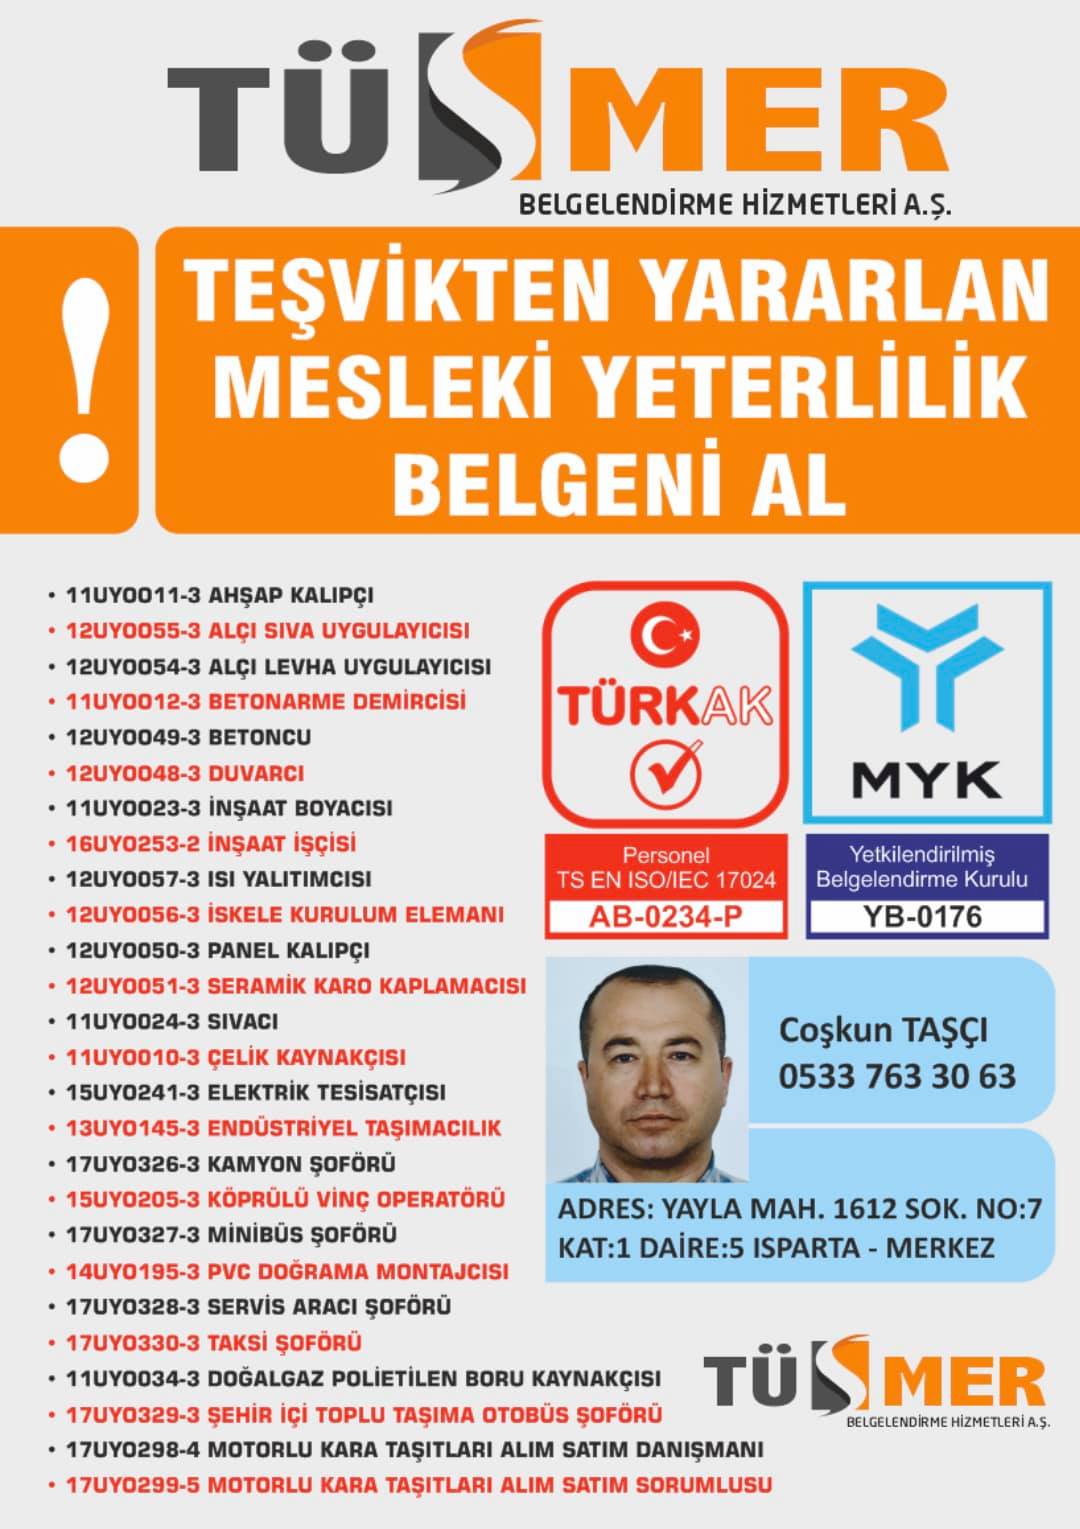 MYK MESLEKİ YETERLİLİK BELGESİ  Pendik İstanbul